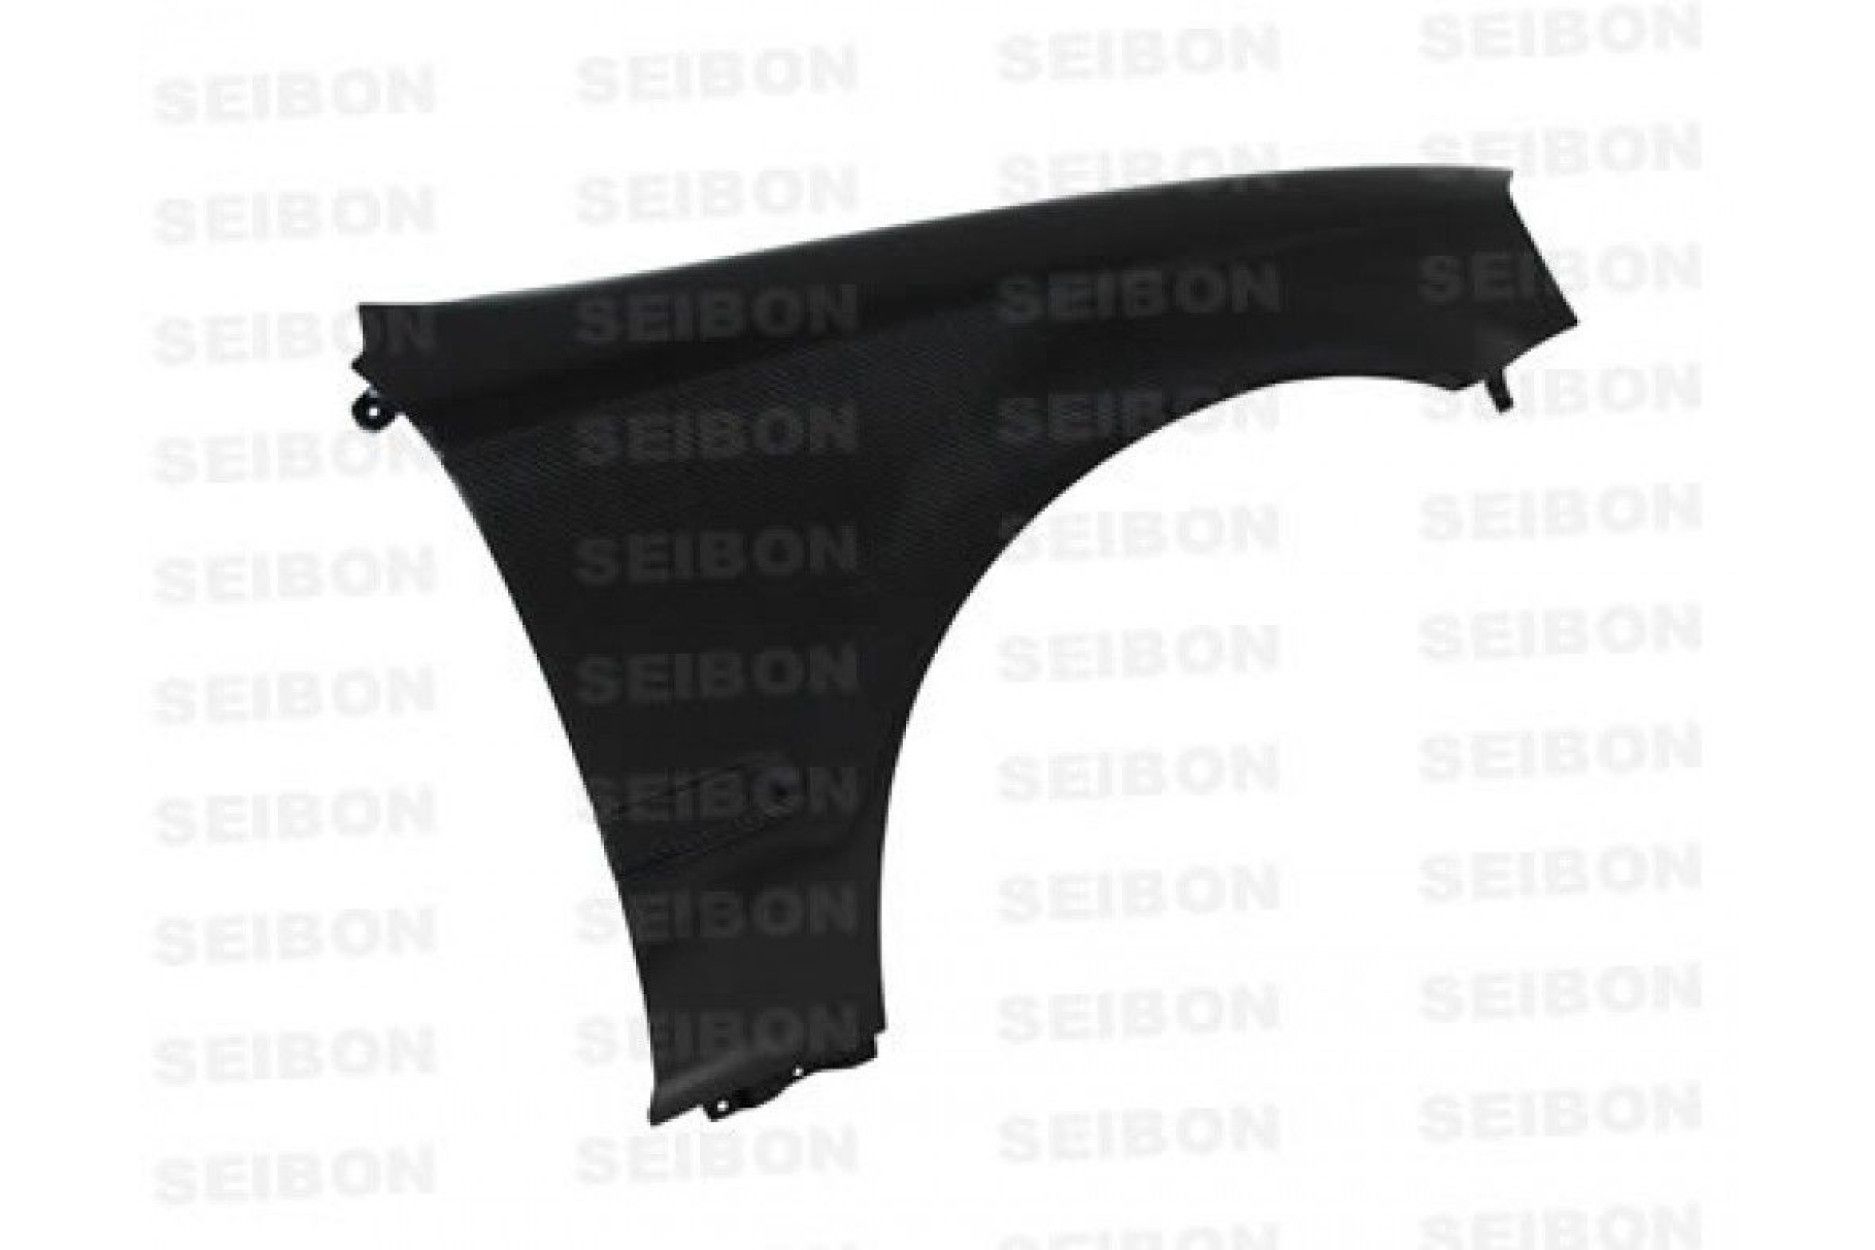 Seibon Carbon Kotflügel für Honda Civic 1999 - 2000 TS-Style